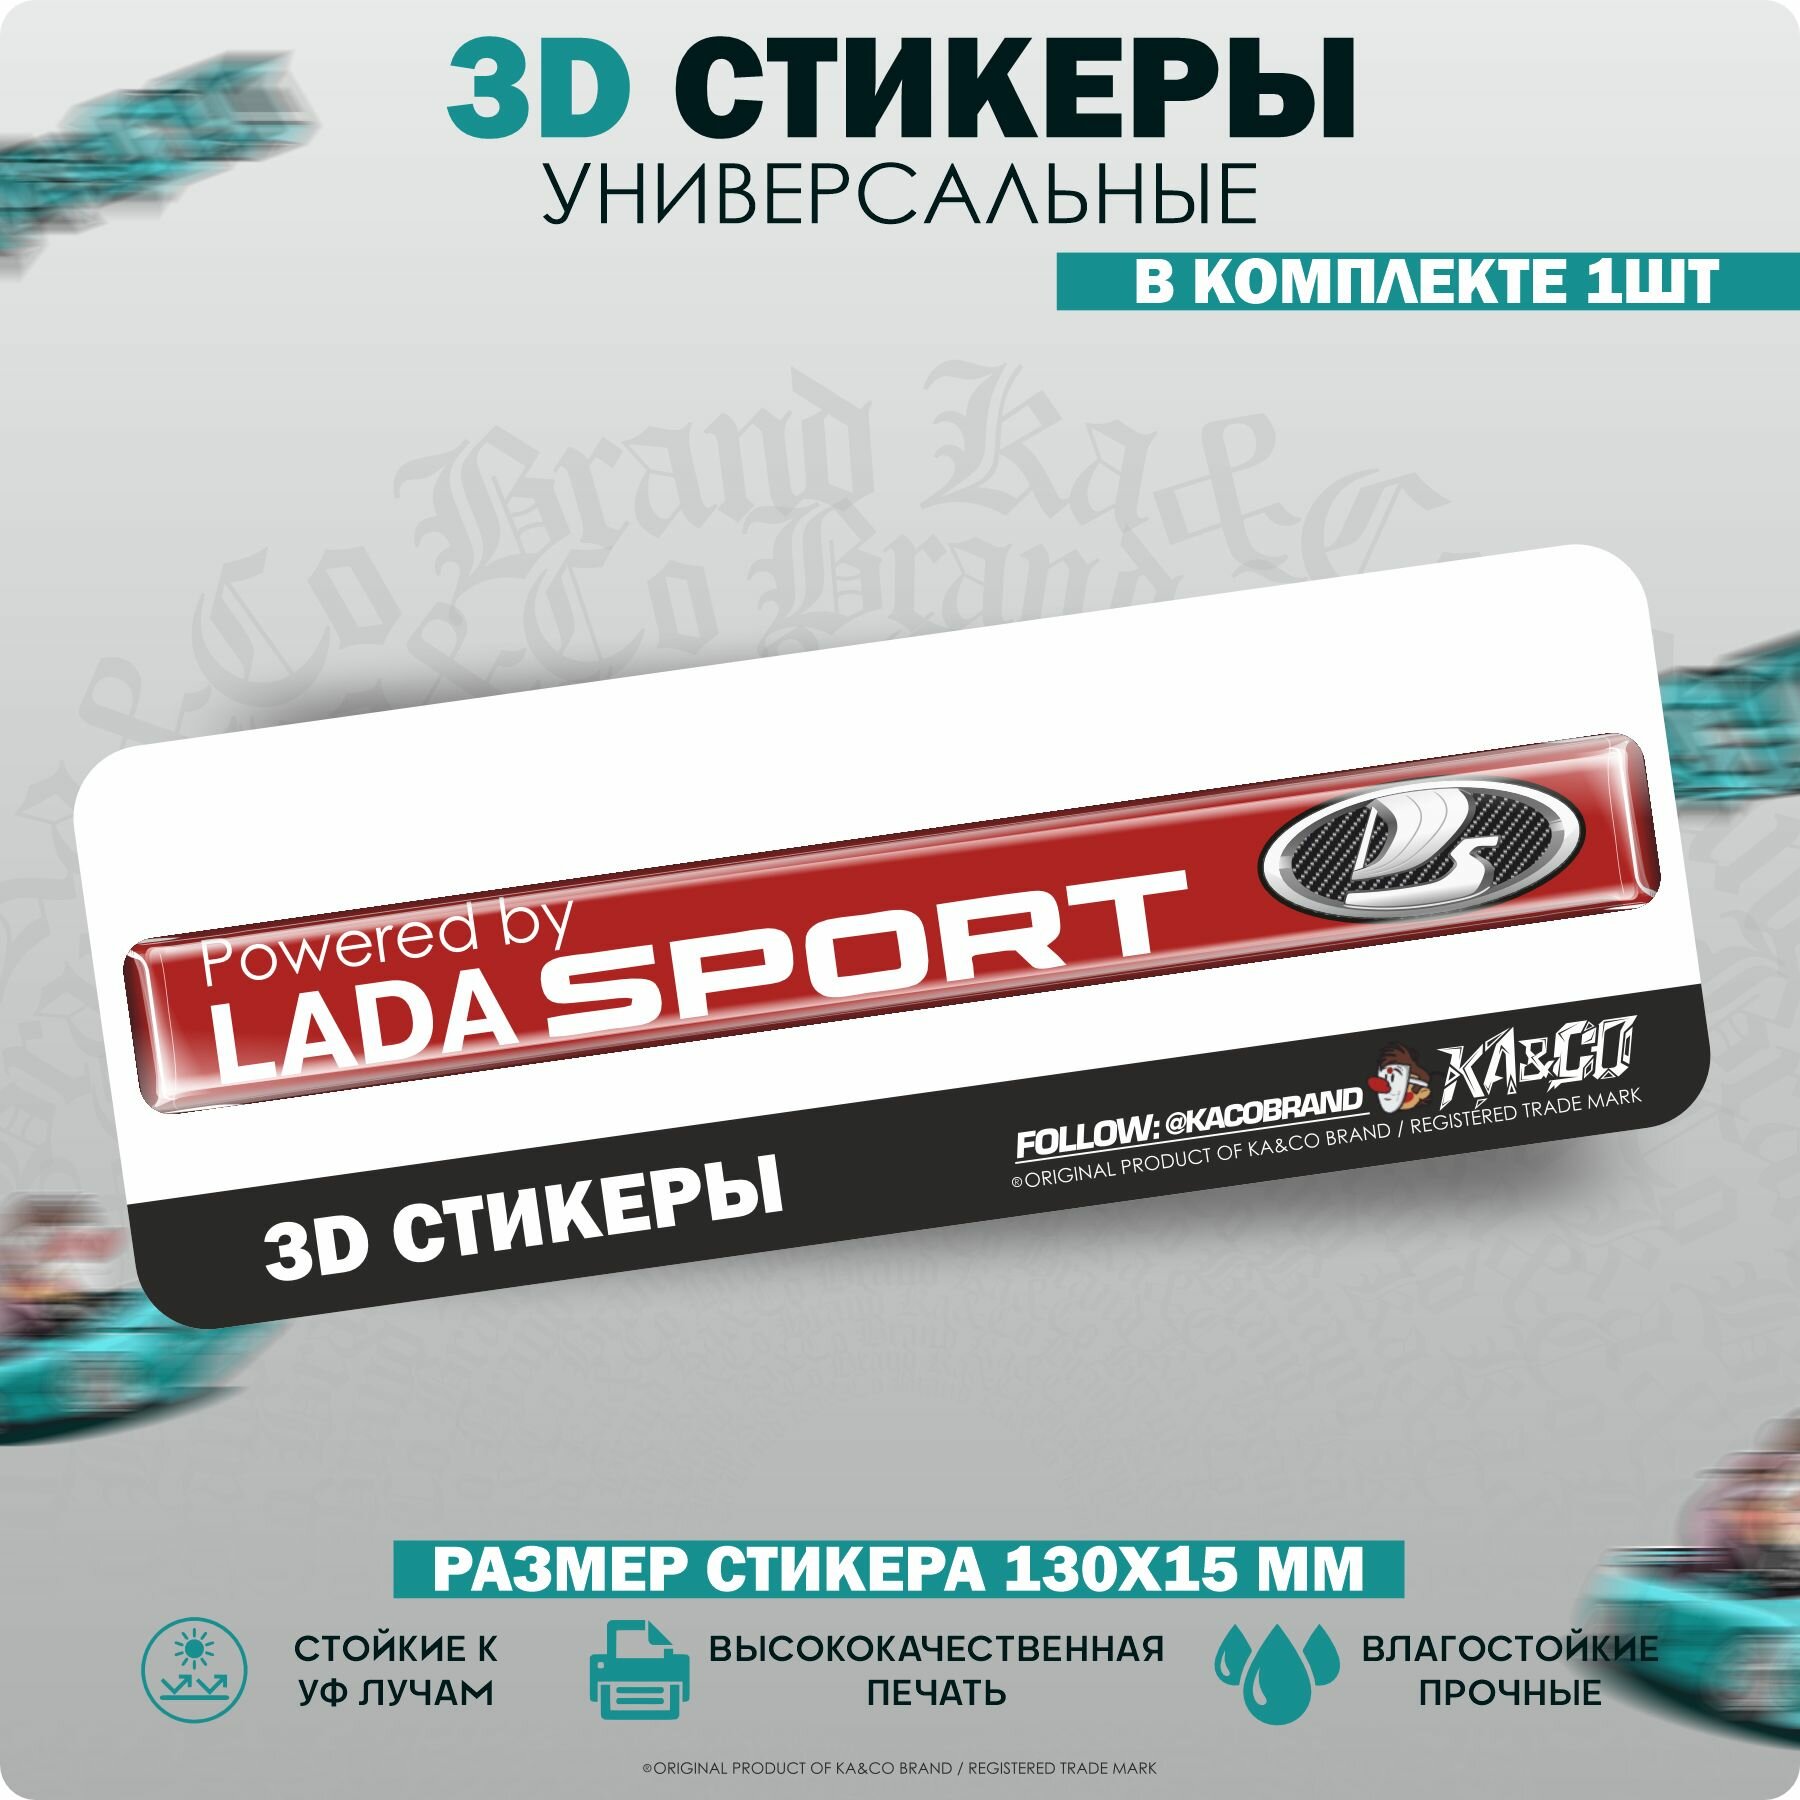 3D Наклейки стикеры на авто шильдик Lada Sport